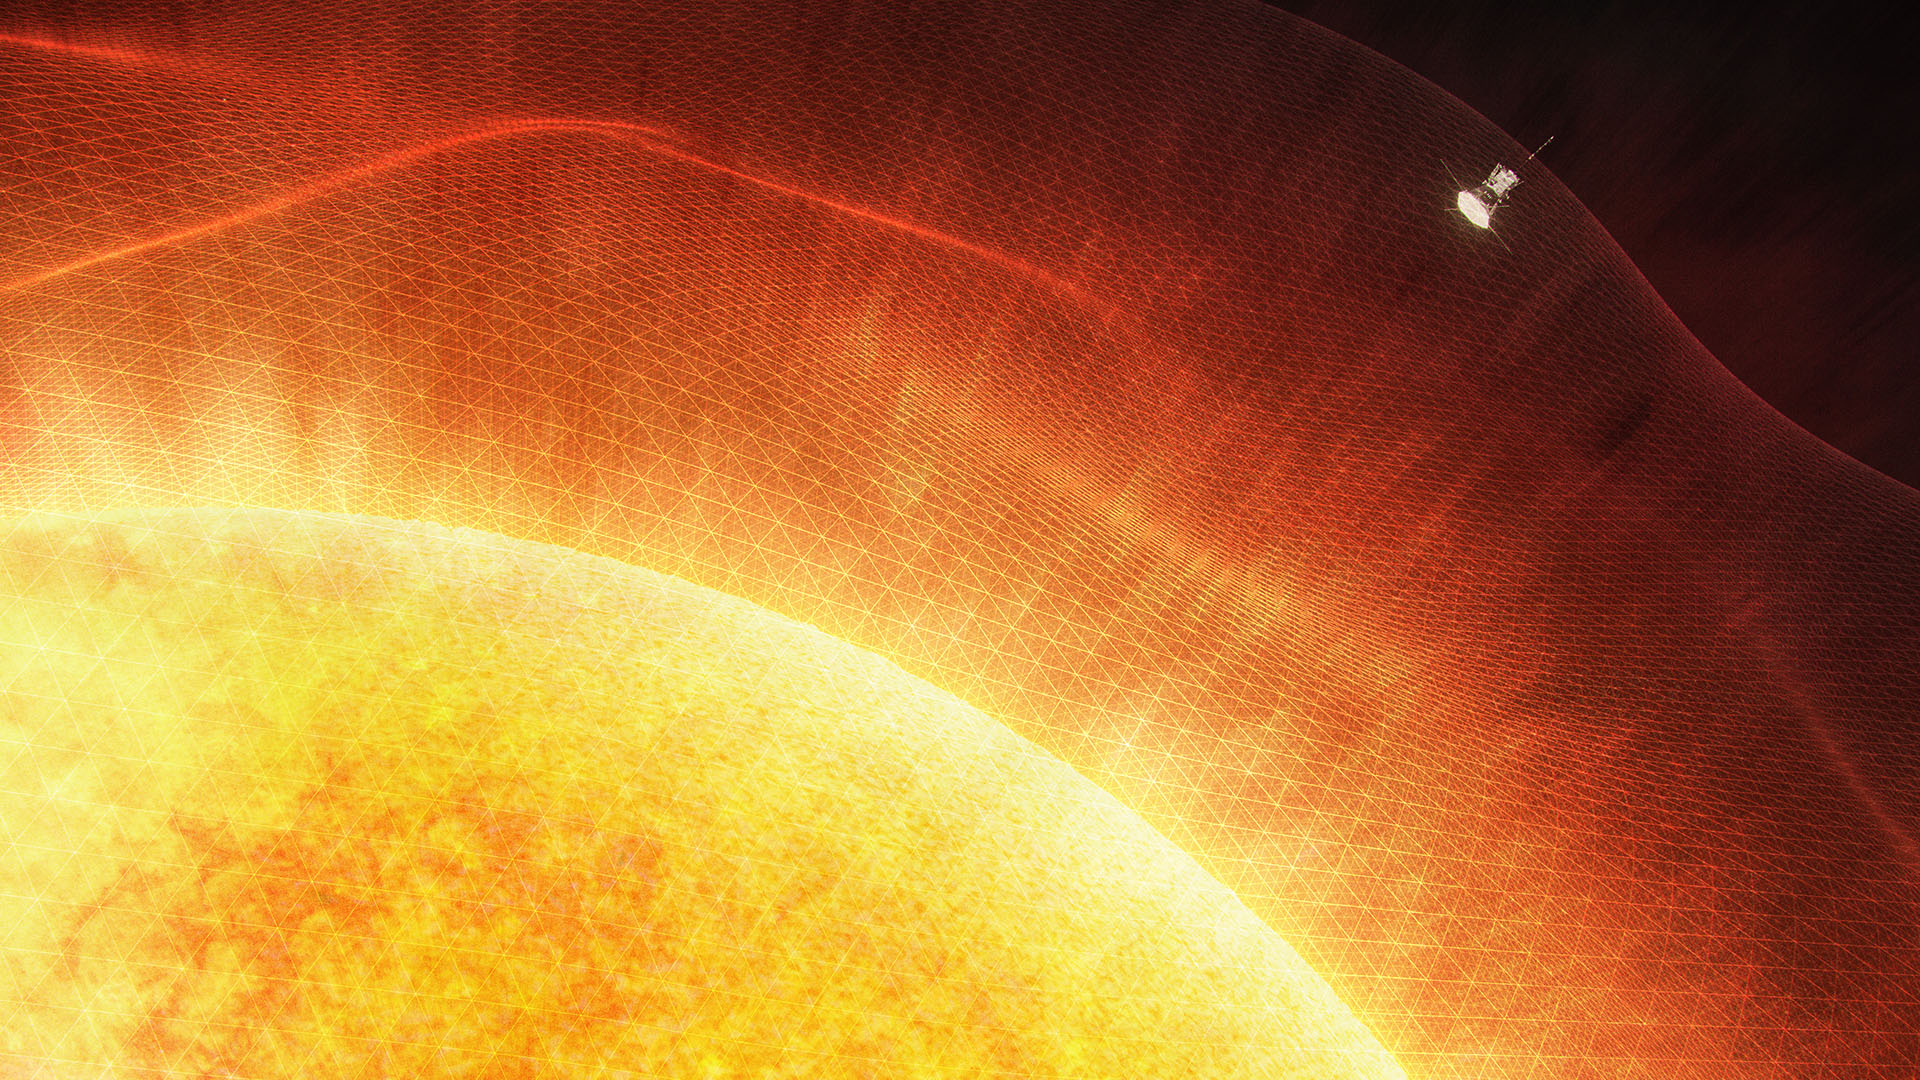 Верхний слой солнечной атмосферы. Паркер Солнечный зонд снимки солнца. Строение атмосферы солнца Фотосфера хромосфера Солнечная корона. Зонд Паркер. Солнце НАСА.